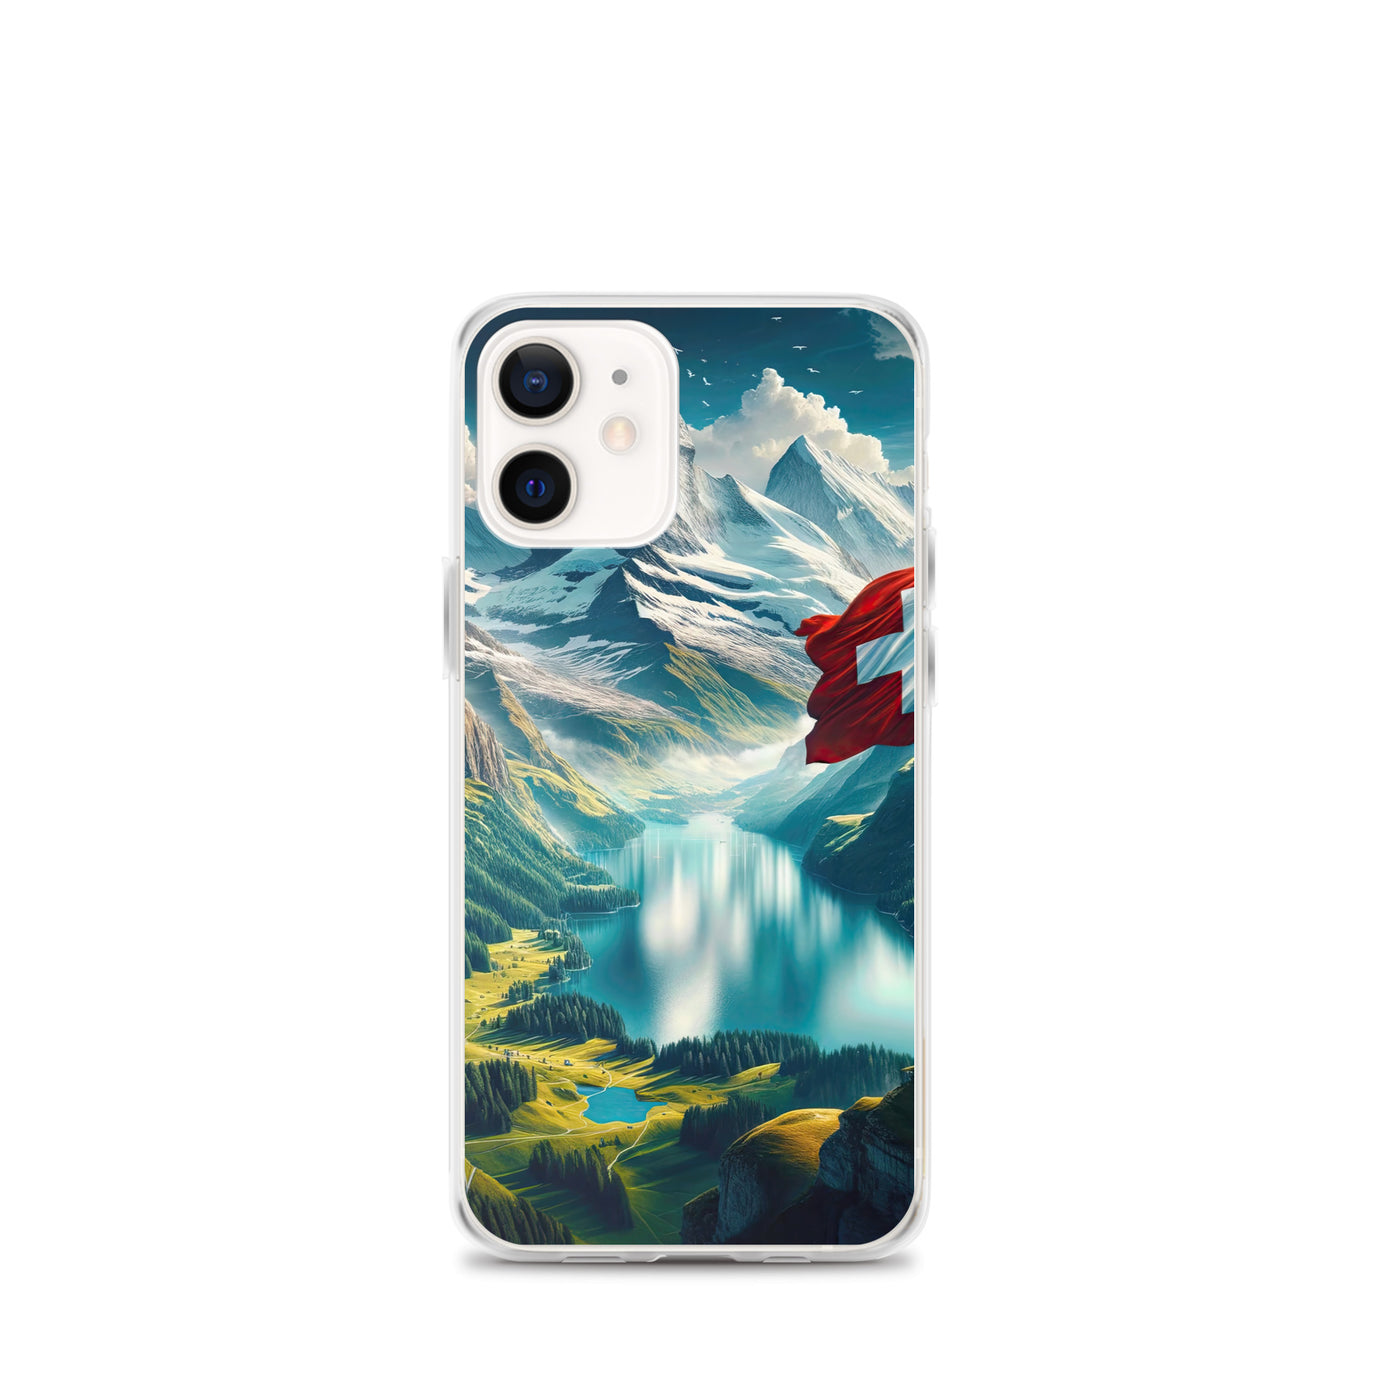 Ultraepische, fotorealistische Darstellung der Schweizer Alpenlandschaft mit Schweizer Flagge - iPhone Schutzhülle (durchsichtig) berge xxx yyy zzz iPhone 12 mini